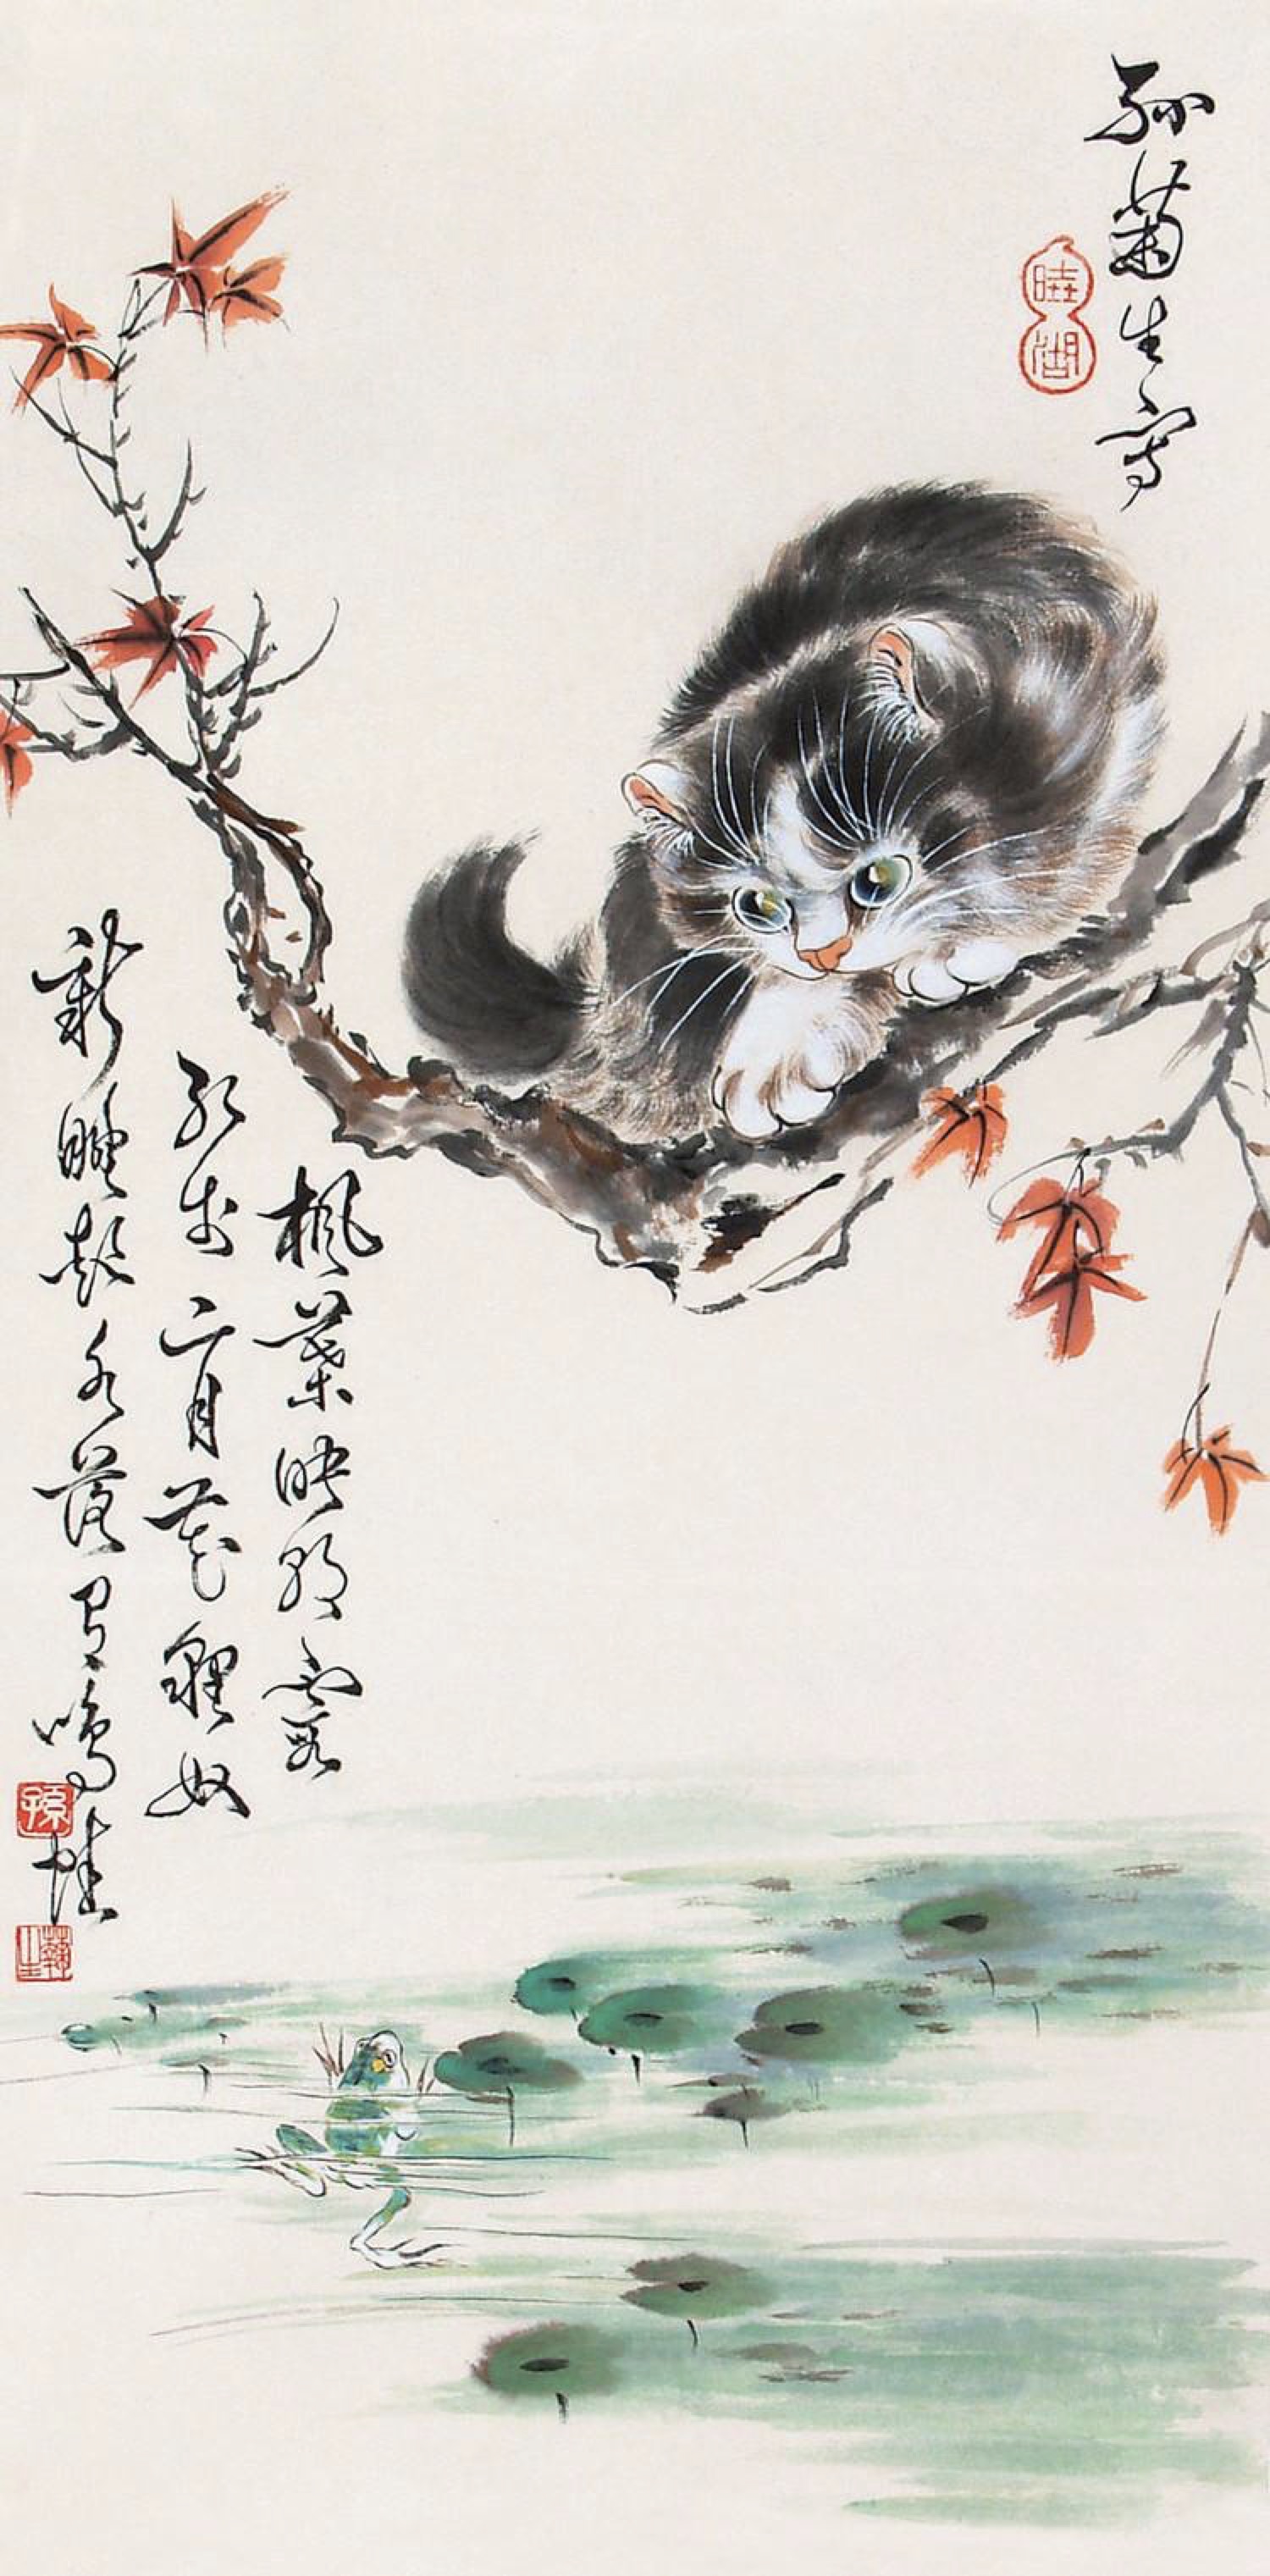 艺术视角|云海:读孙菊生的猫与刘中的熊猫作品有感